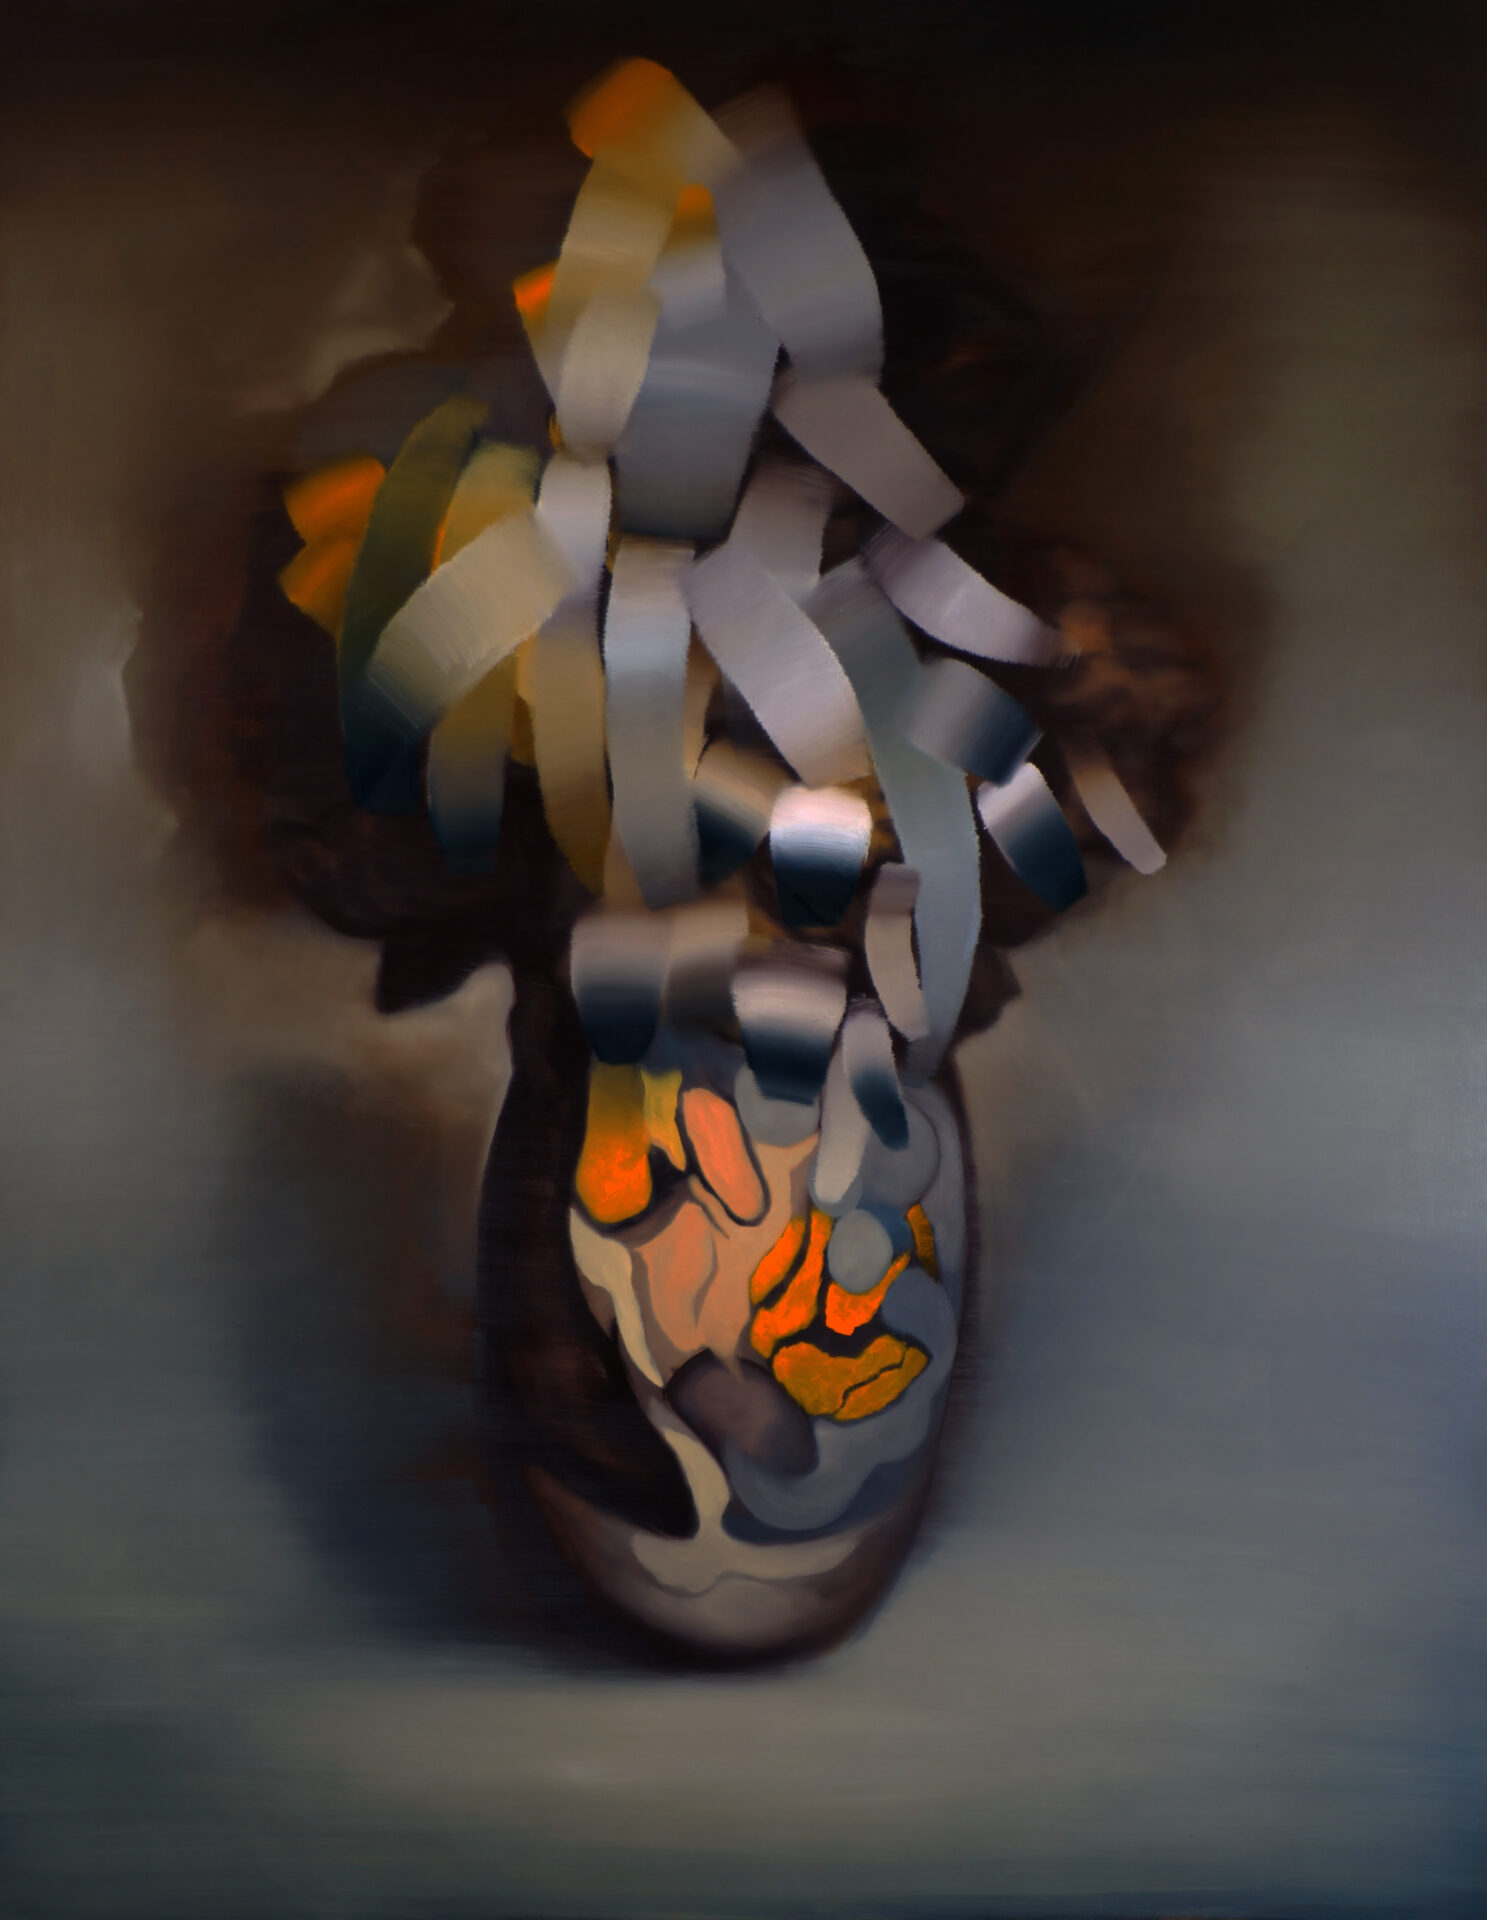 Daniel Beer STILLEBEN 20-13, 230 x185 cm, Öl auf Leinwand, 2020